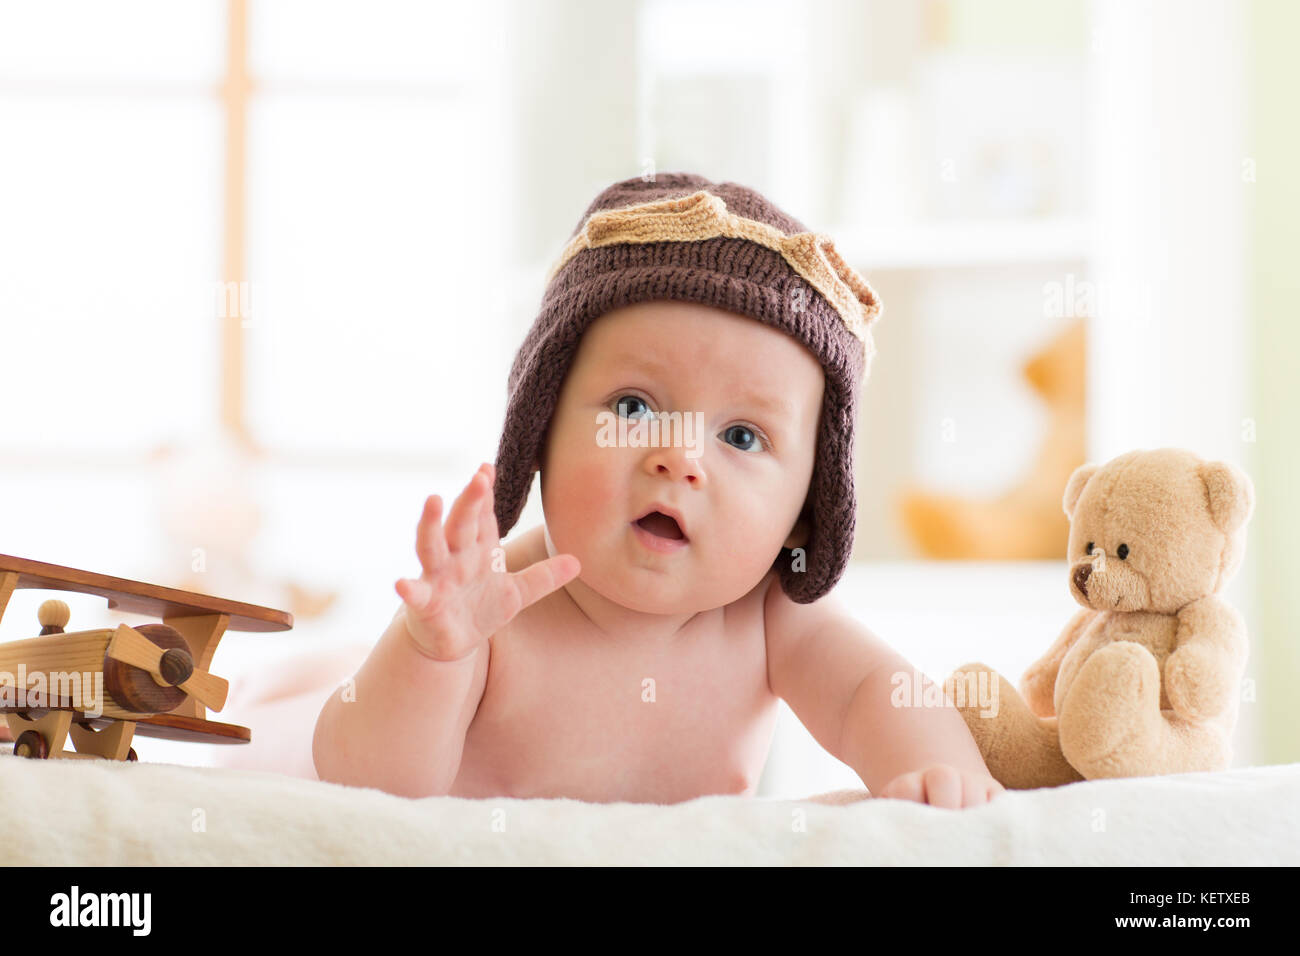 Lustige baby boy getragen pilot Hut mit Holz- Flugzeuge und Teddybären Spielzeug Stockfoto